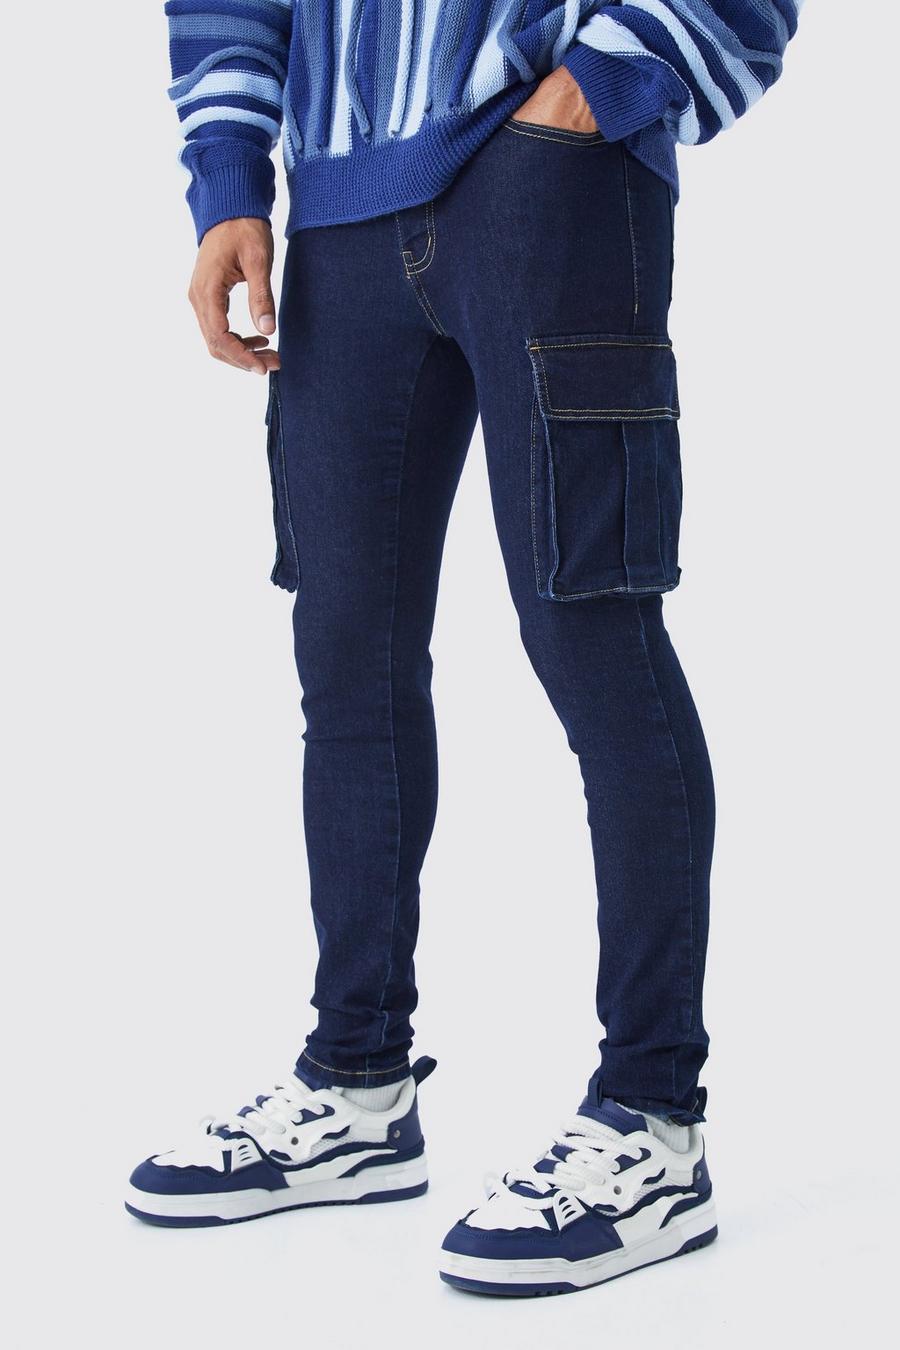 Jeans Cargo Skinny Fit in Stretch, Indigo